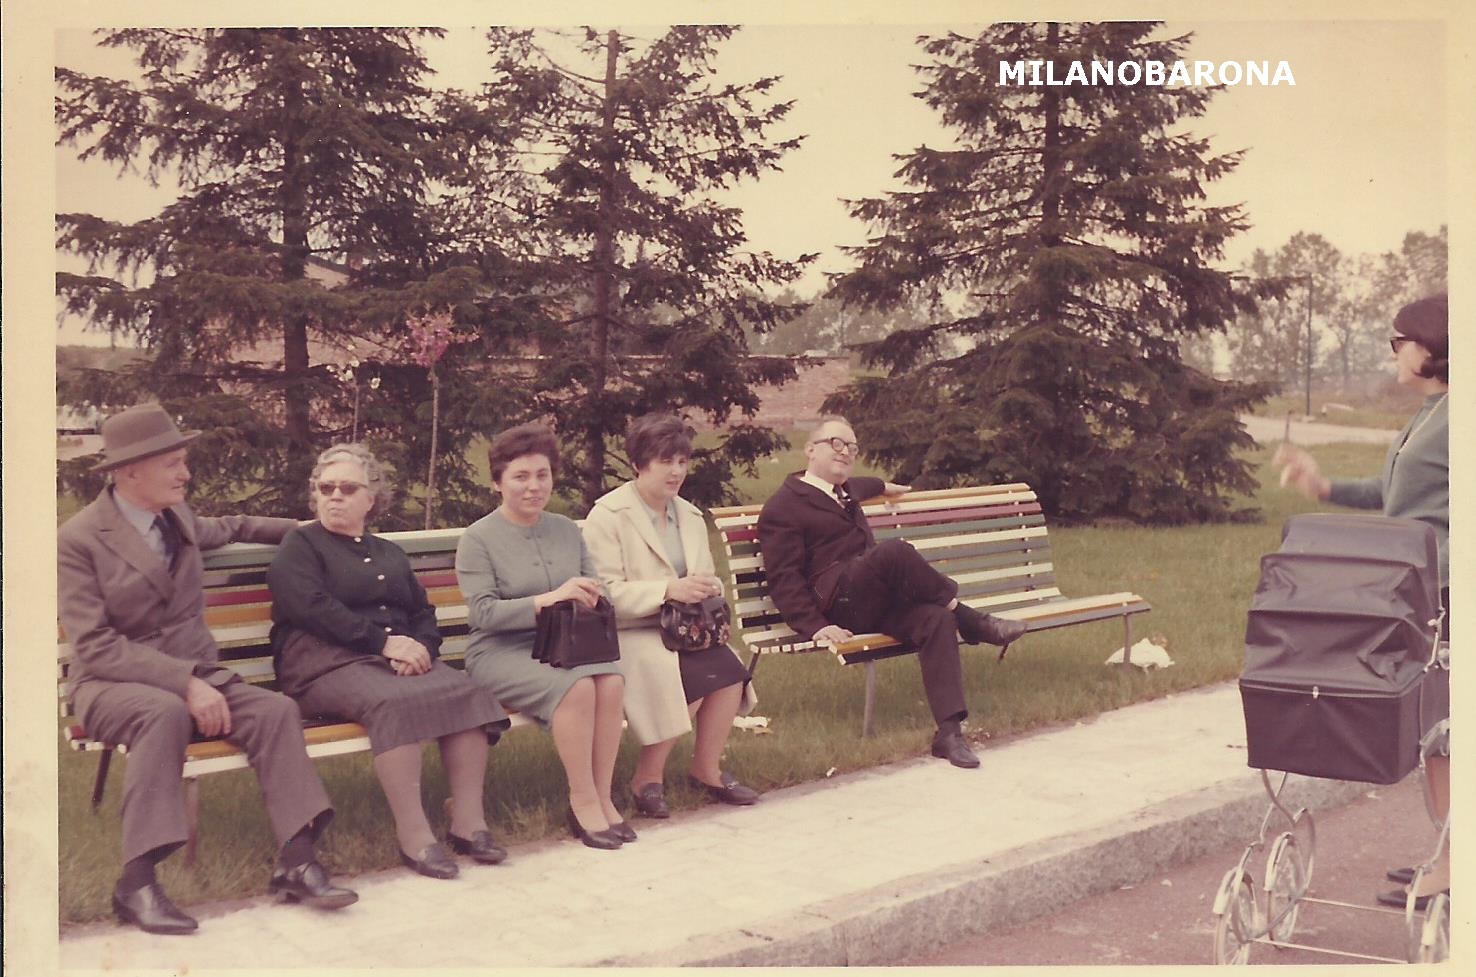 Parco Lambro, seconda metà anni'60 (gentile concessione immagine diun ex residente quartiere Feltre.